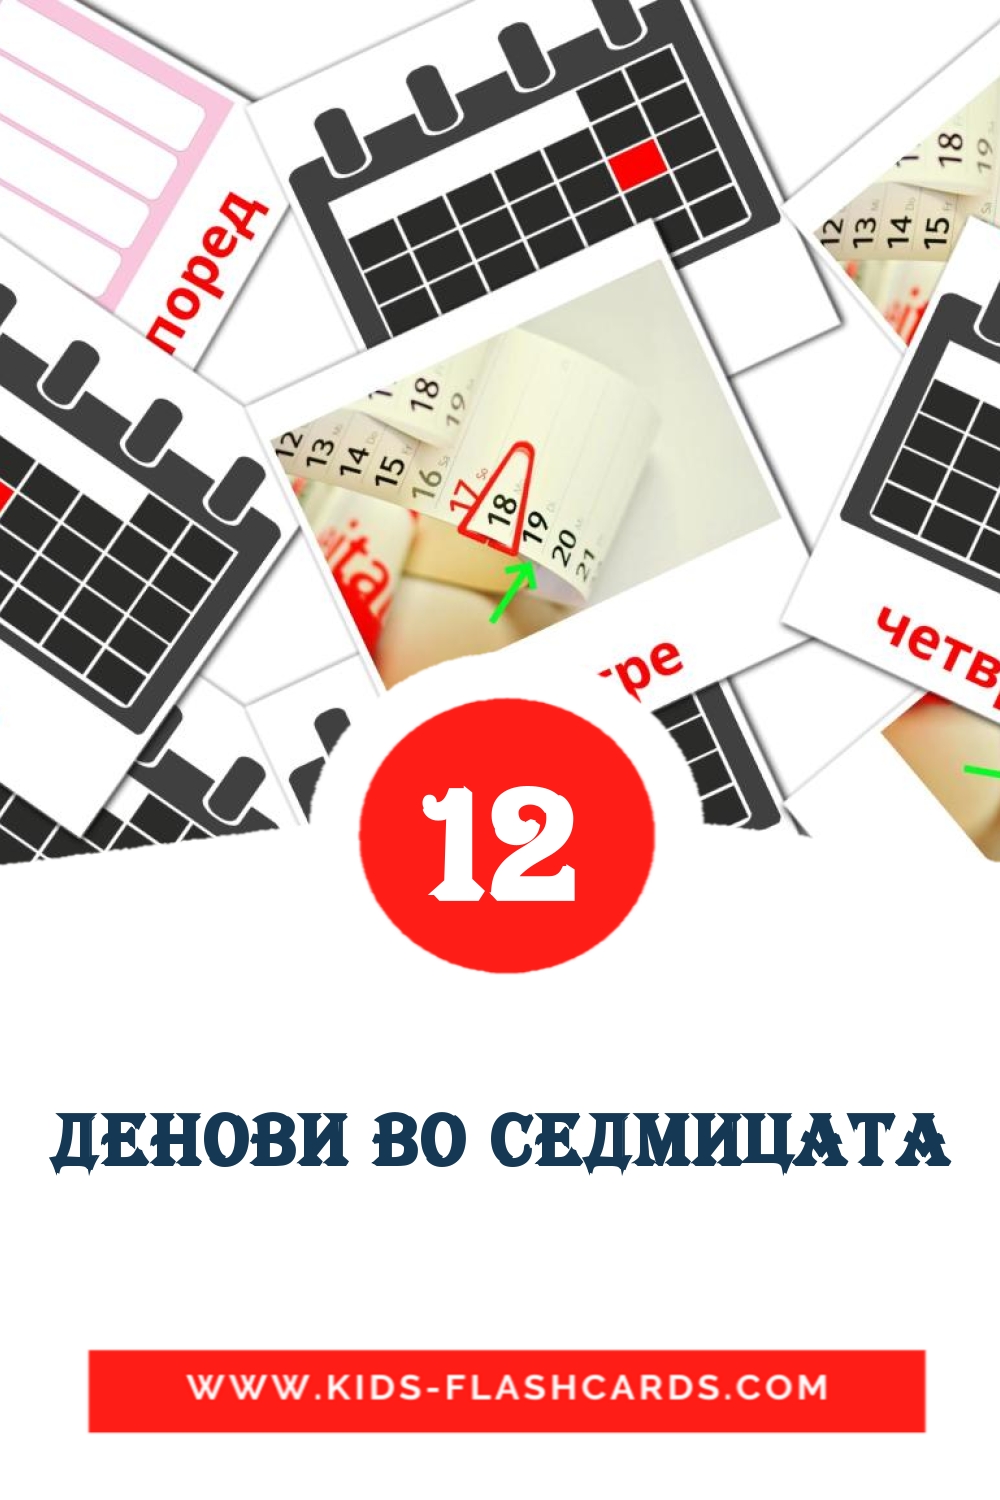 12 carte illustrate di Денови во седмицата per la scuola materna in macedone